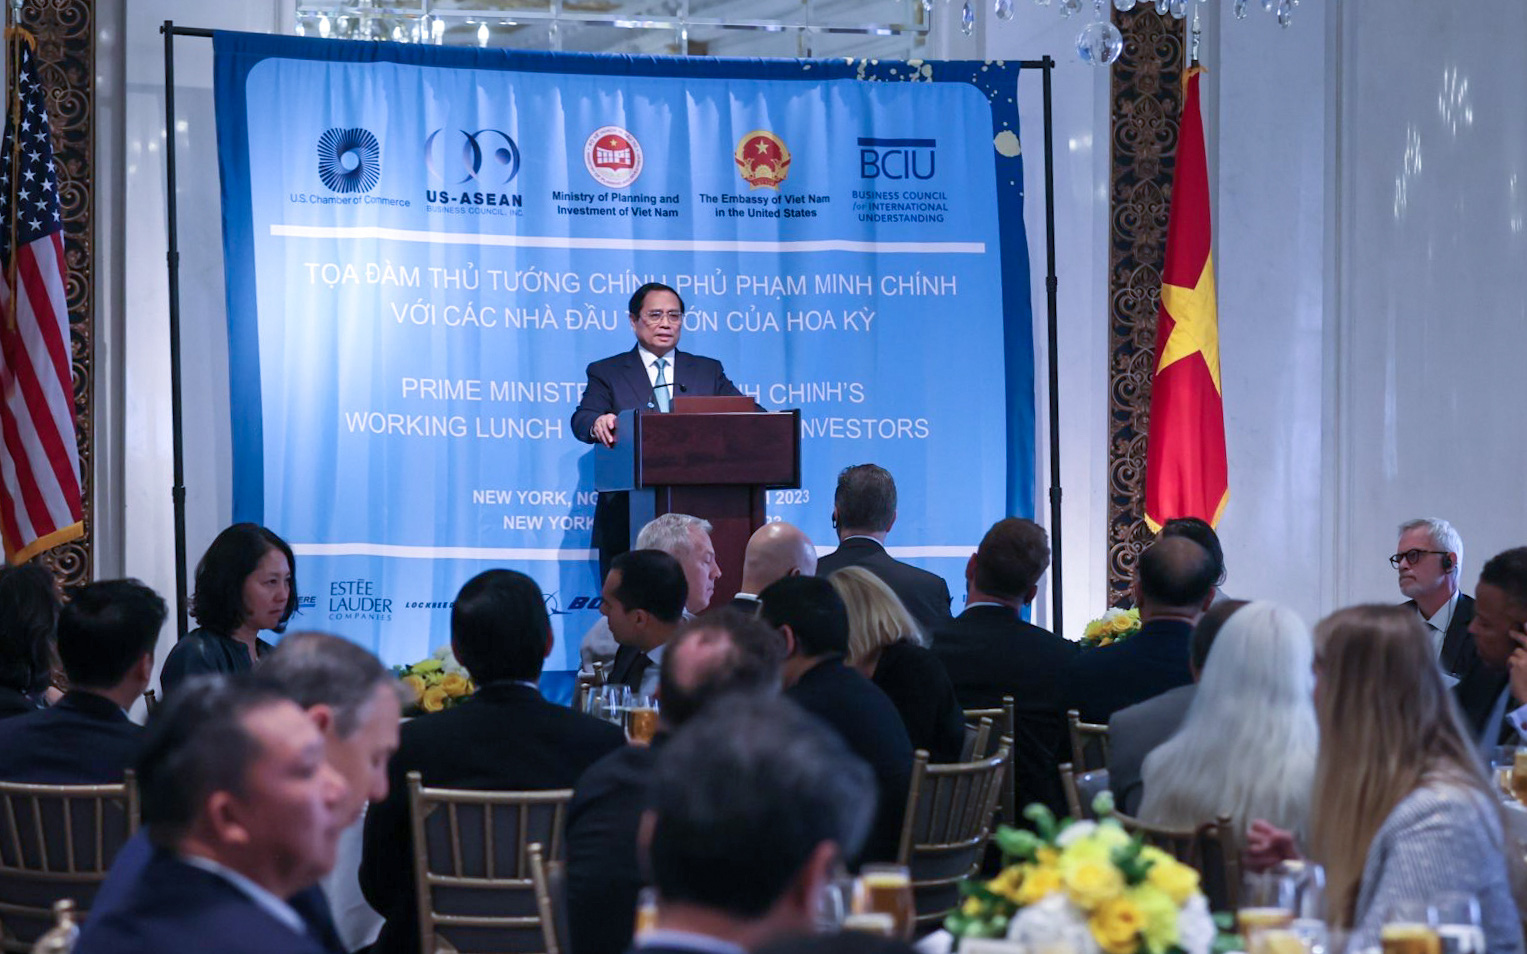 Thủ tướng Phạm Minh Chính khẳng định Việt Nam luôn chào đón các nhà đầu tư Mỹ